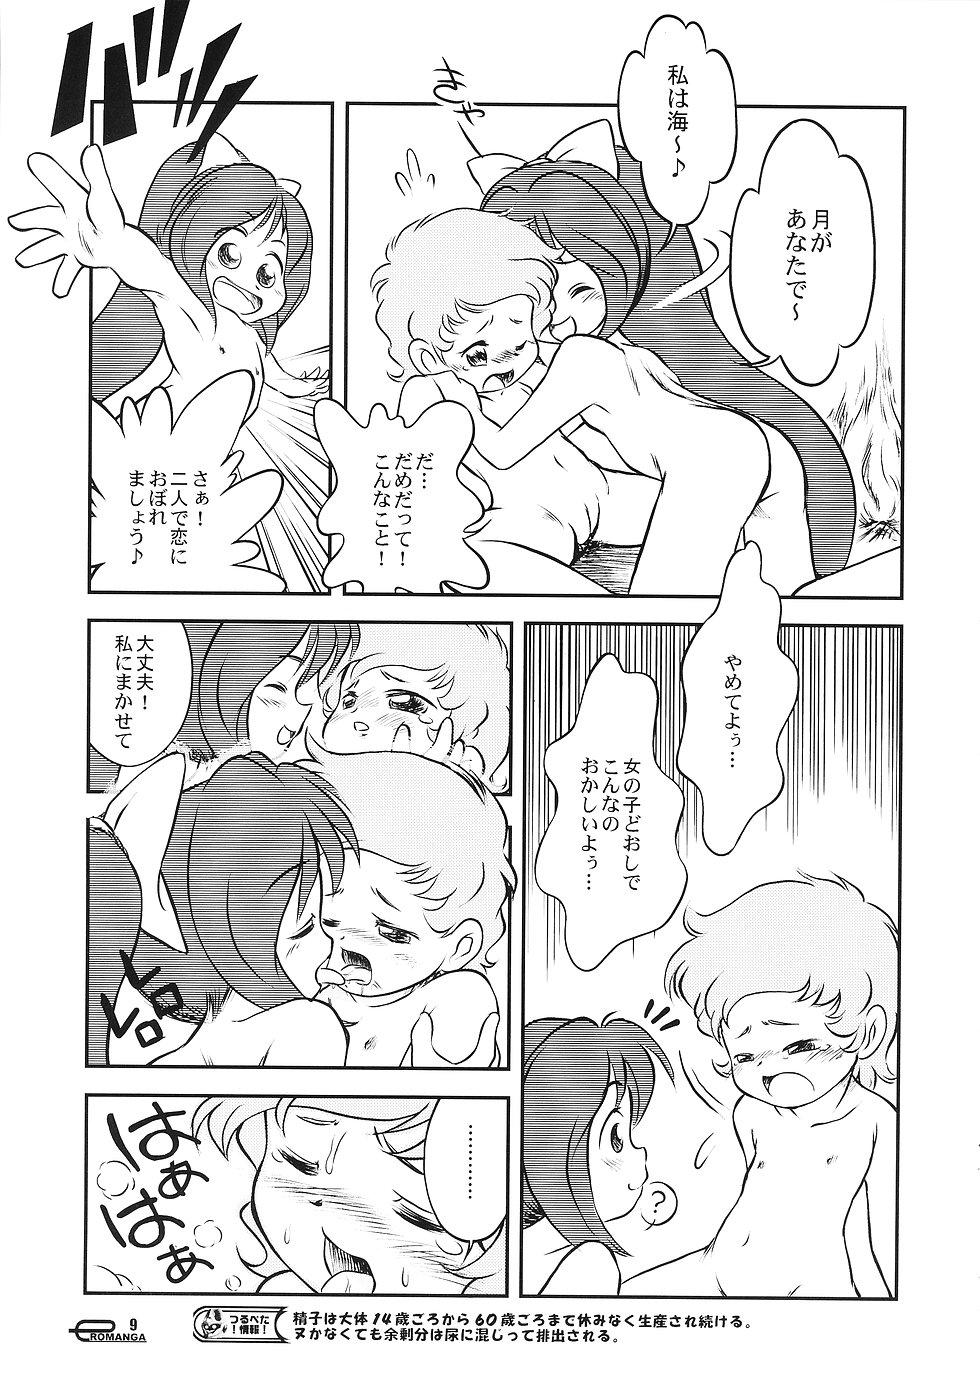 Blows Manga Science 3 - Sou Nanda! Parties - Page 8